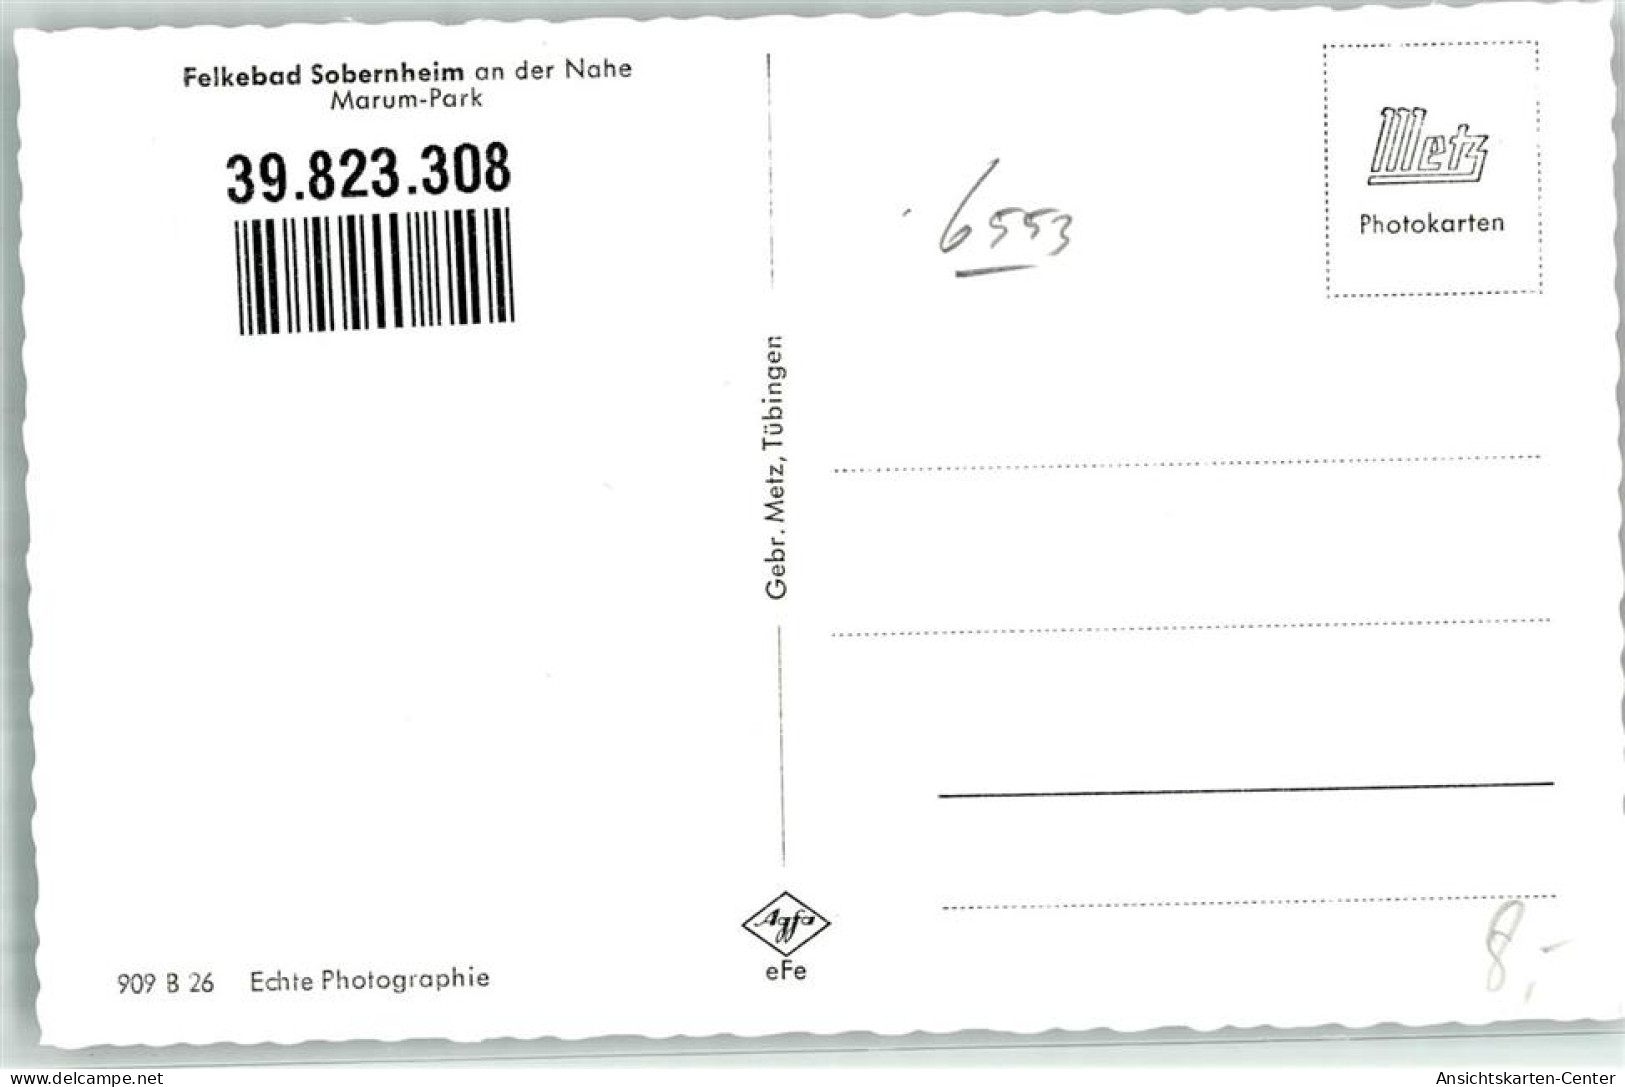 39823308 - Sobernheim - Bad Sobernheim